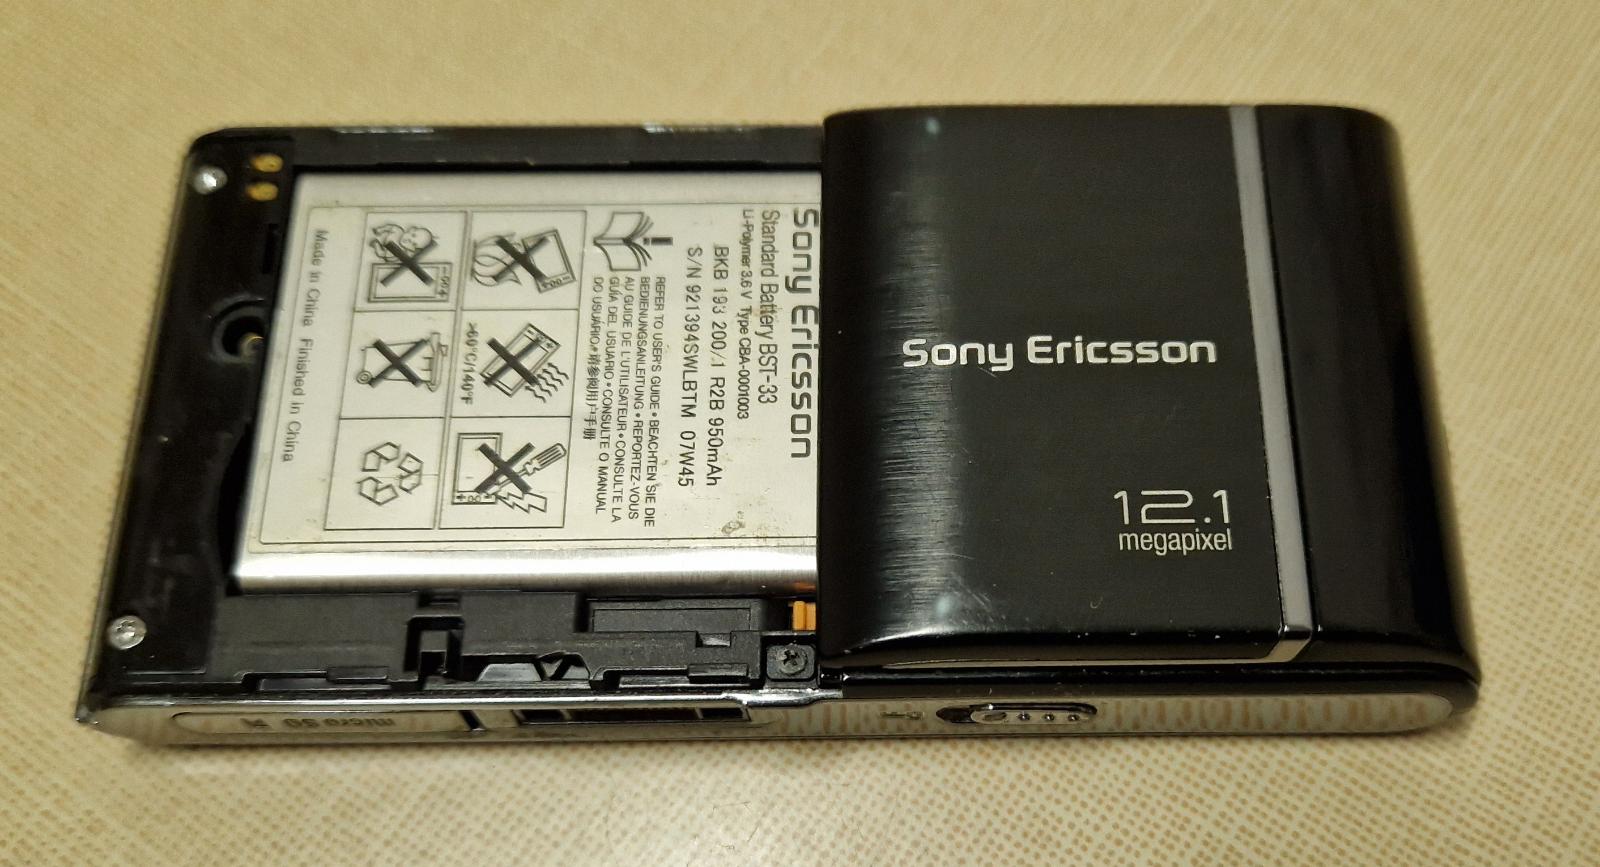 Sony Ericsson Satio, plně funkční, v češtině, volný na všechny oper. - Mobily a chytrá elektronika